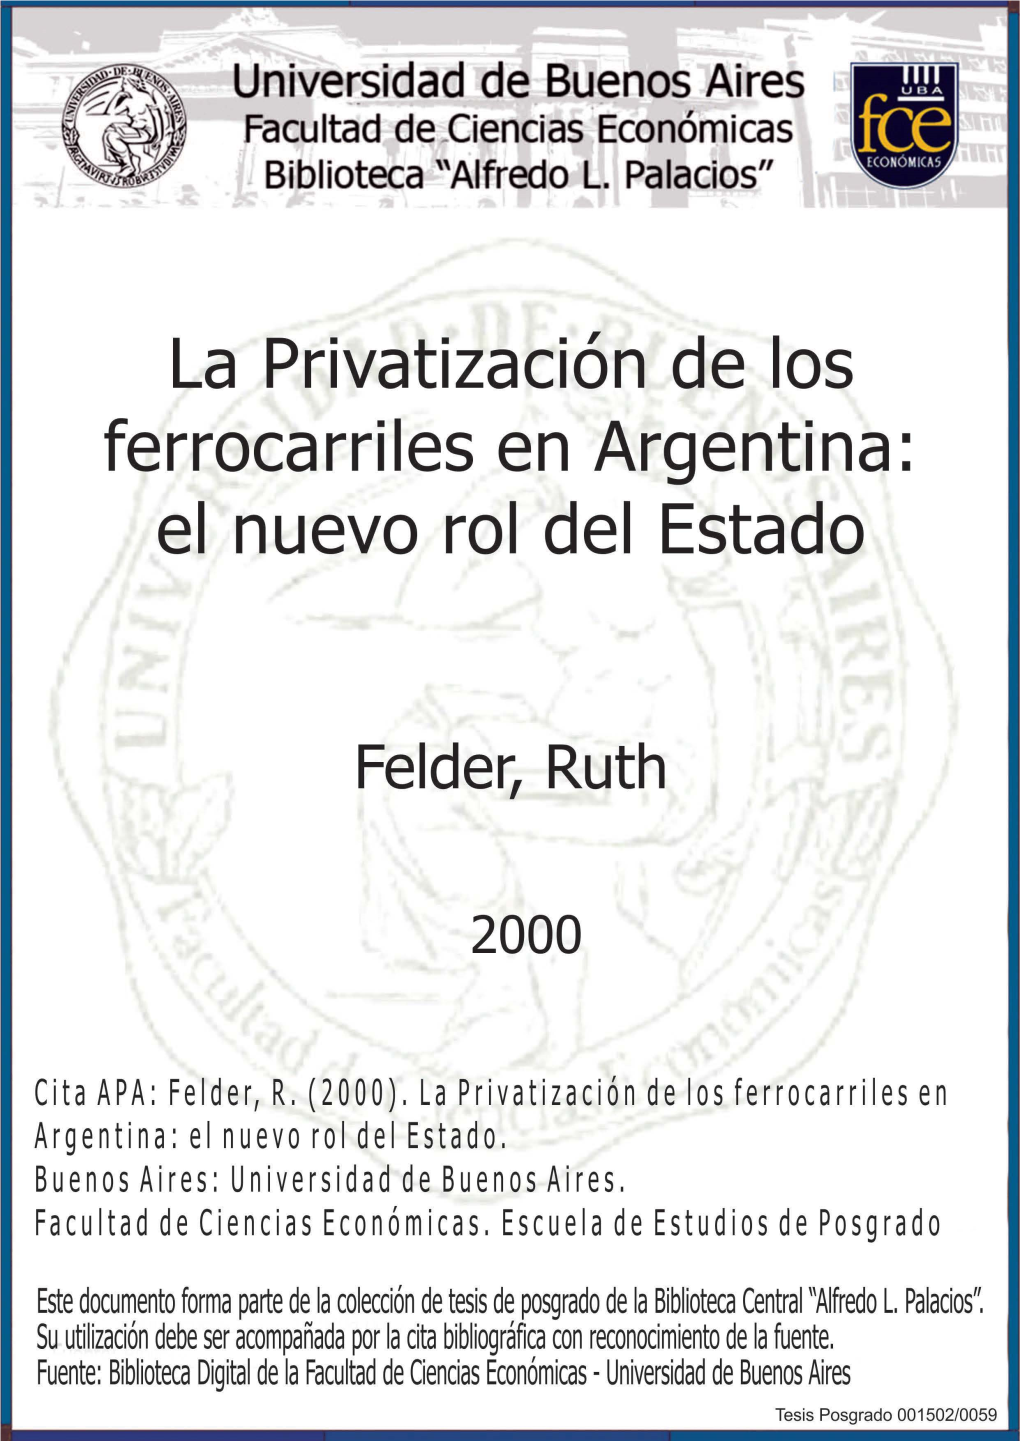 La Privatización De Los Ferrocarriles En Argentina: El Nuevo Rol Del Estado